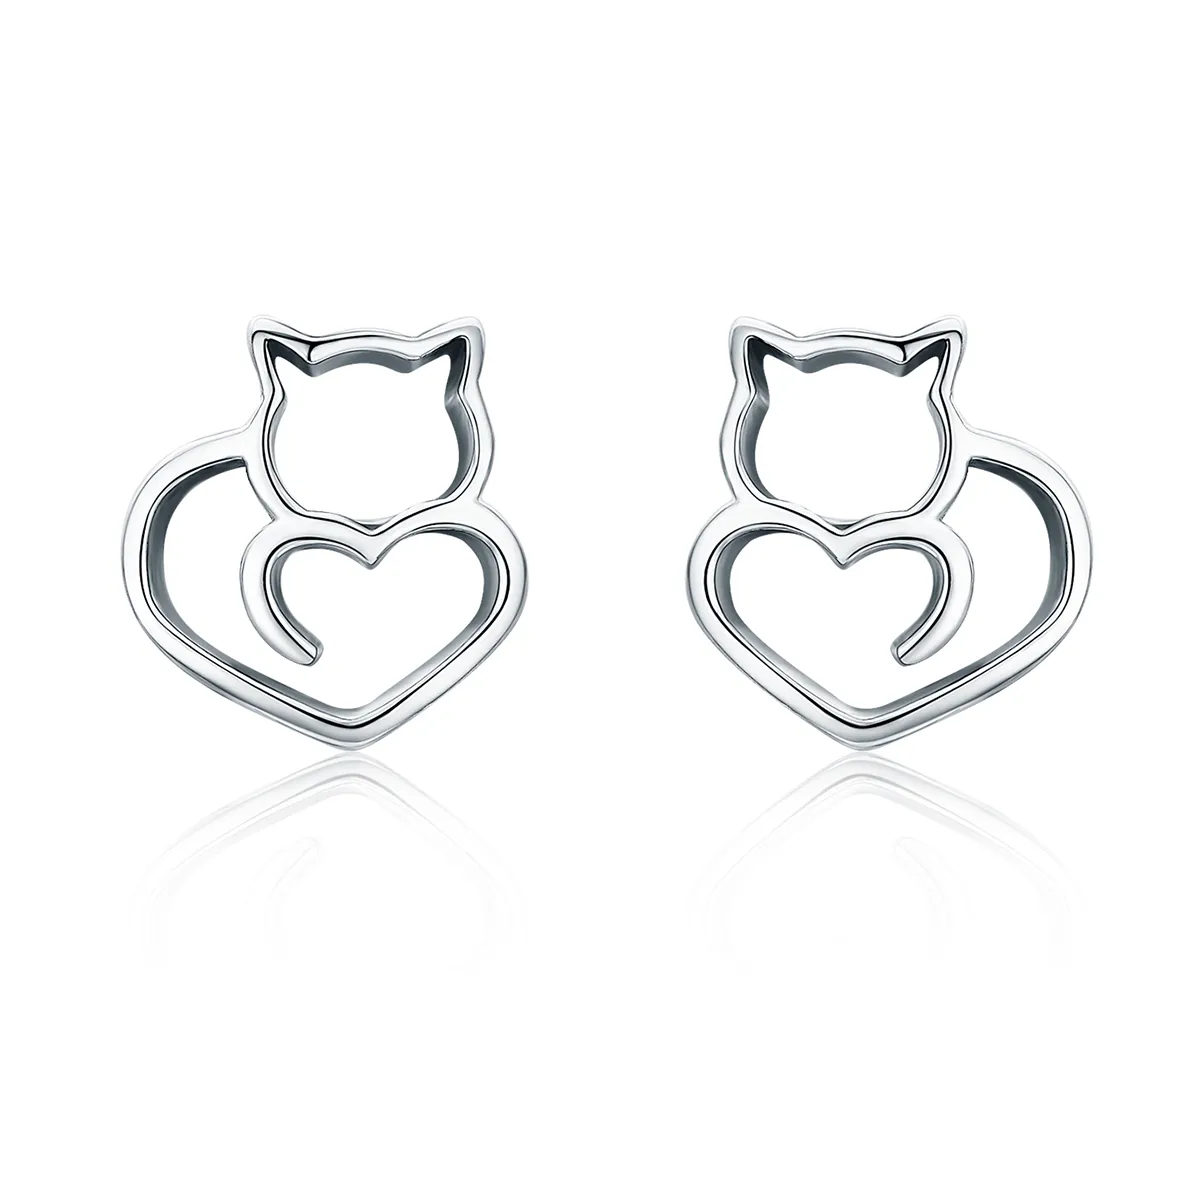 Pandora Style Silver Cute Cat Stud Earrings - SCE271